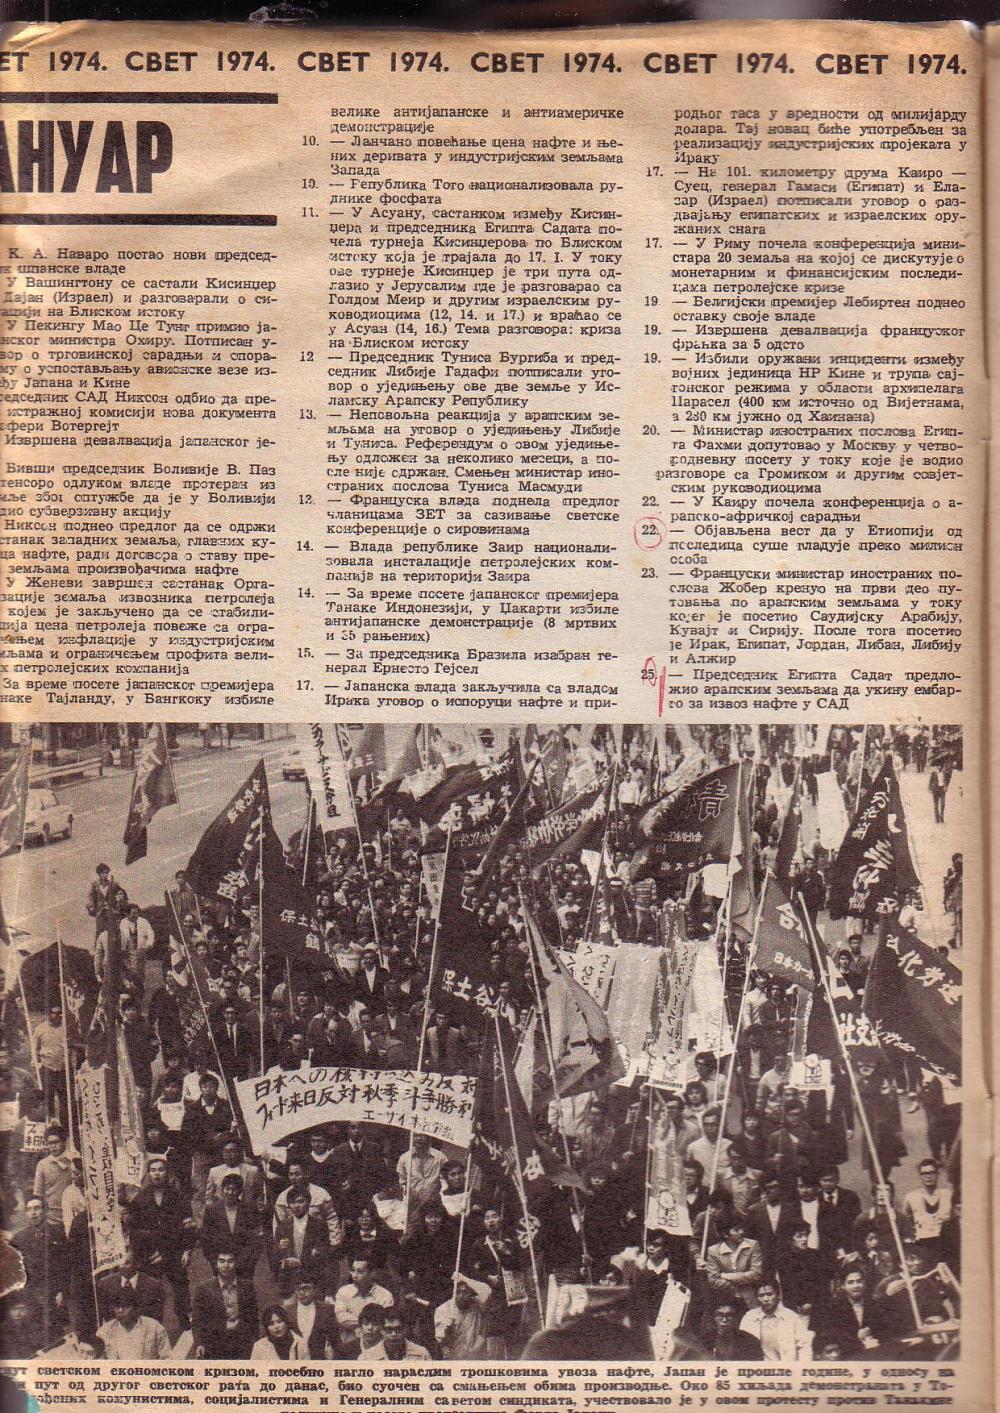 СВЕТ 1974. Хронологија догађаја. (Политика, 19. јануар 1975. године), 2. стр.